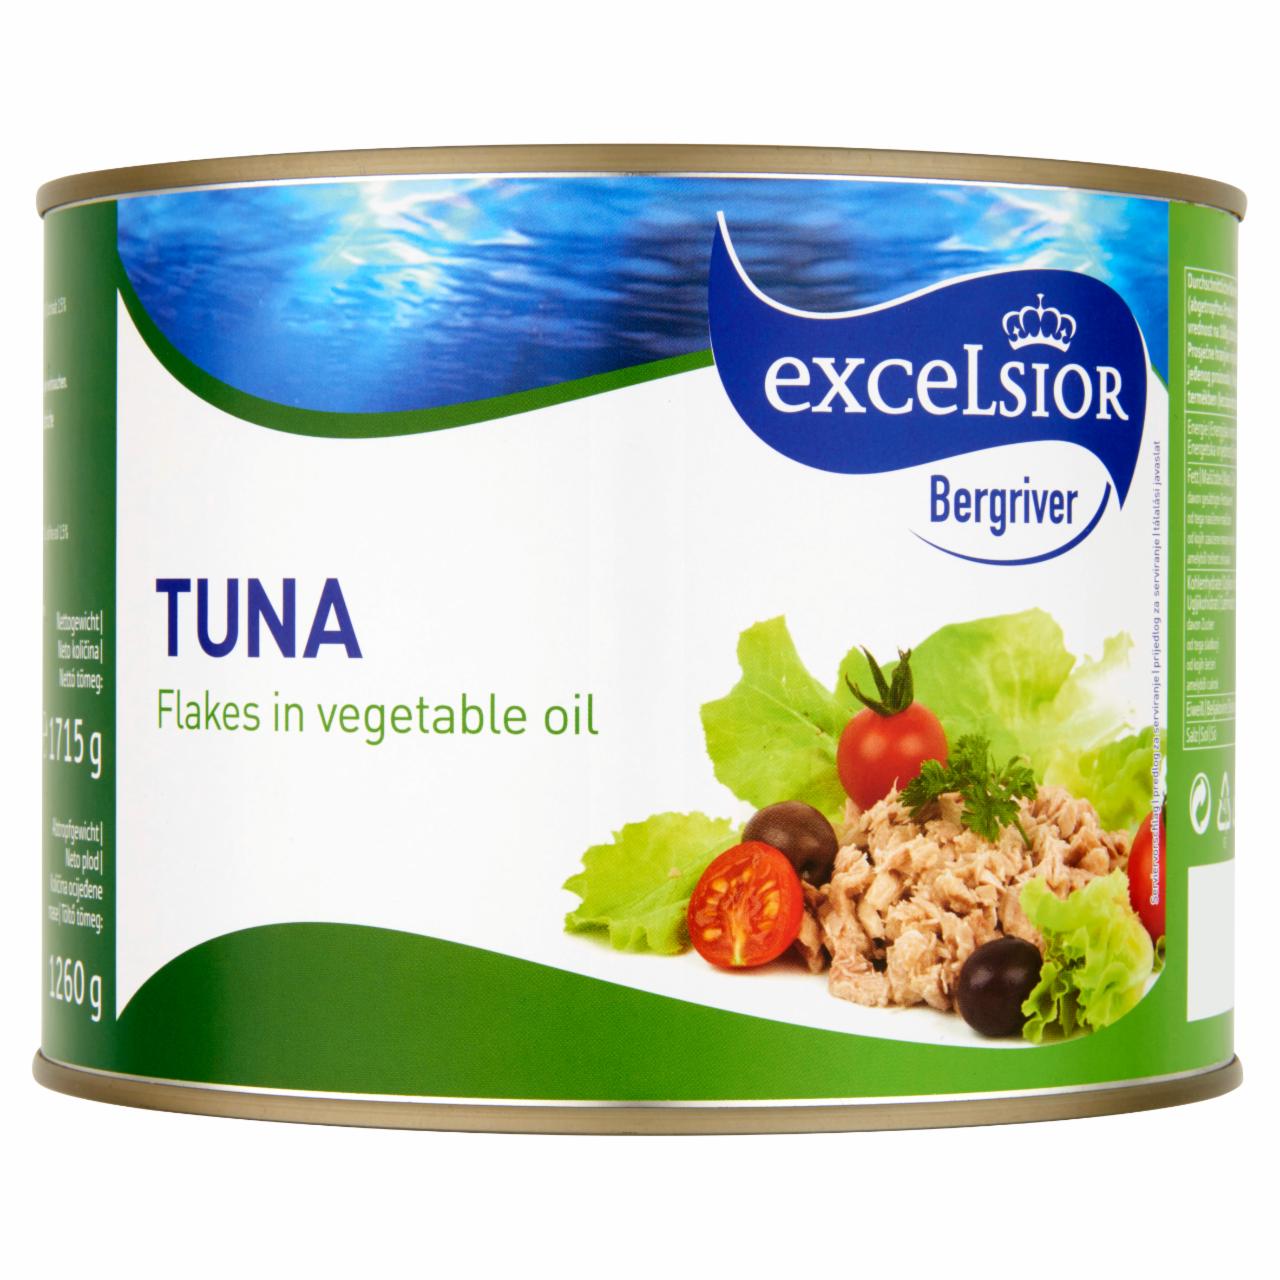 Képek - Excelsior aprított tonhal növényi olajban 1715 g